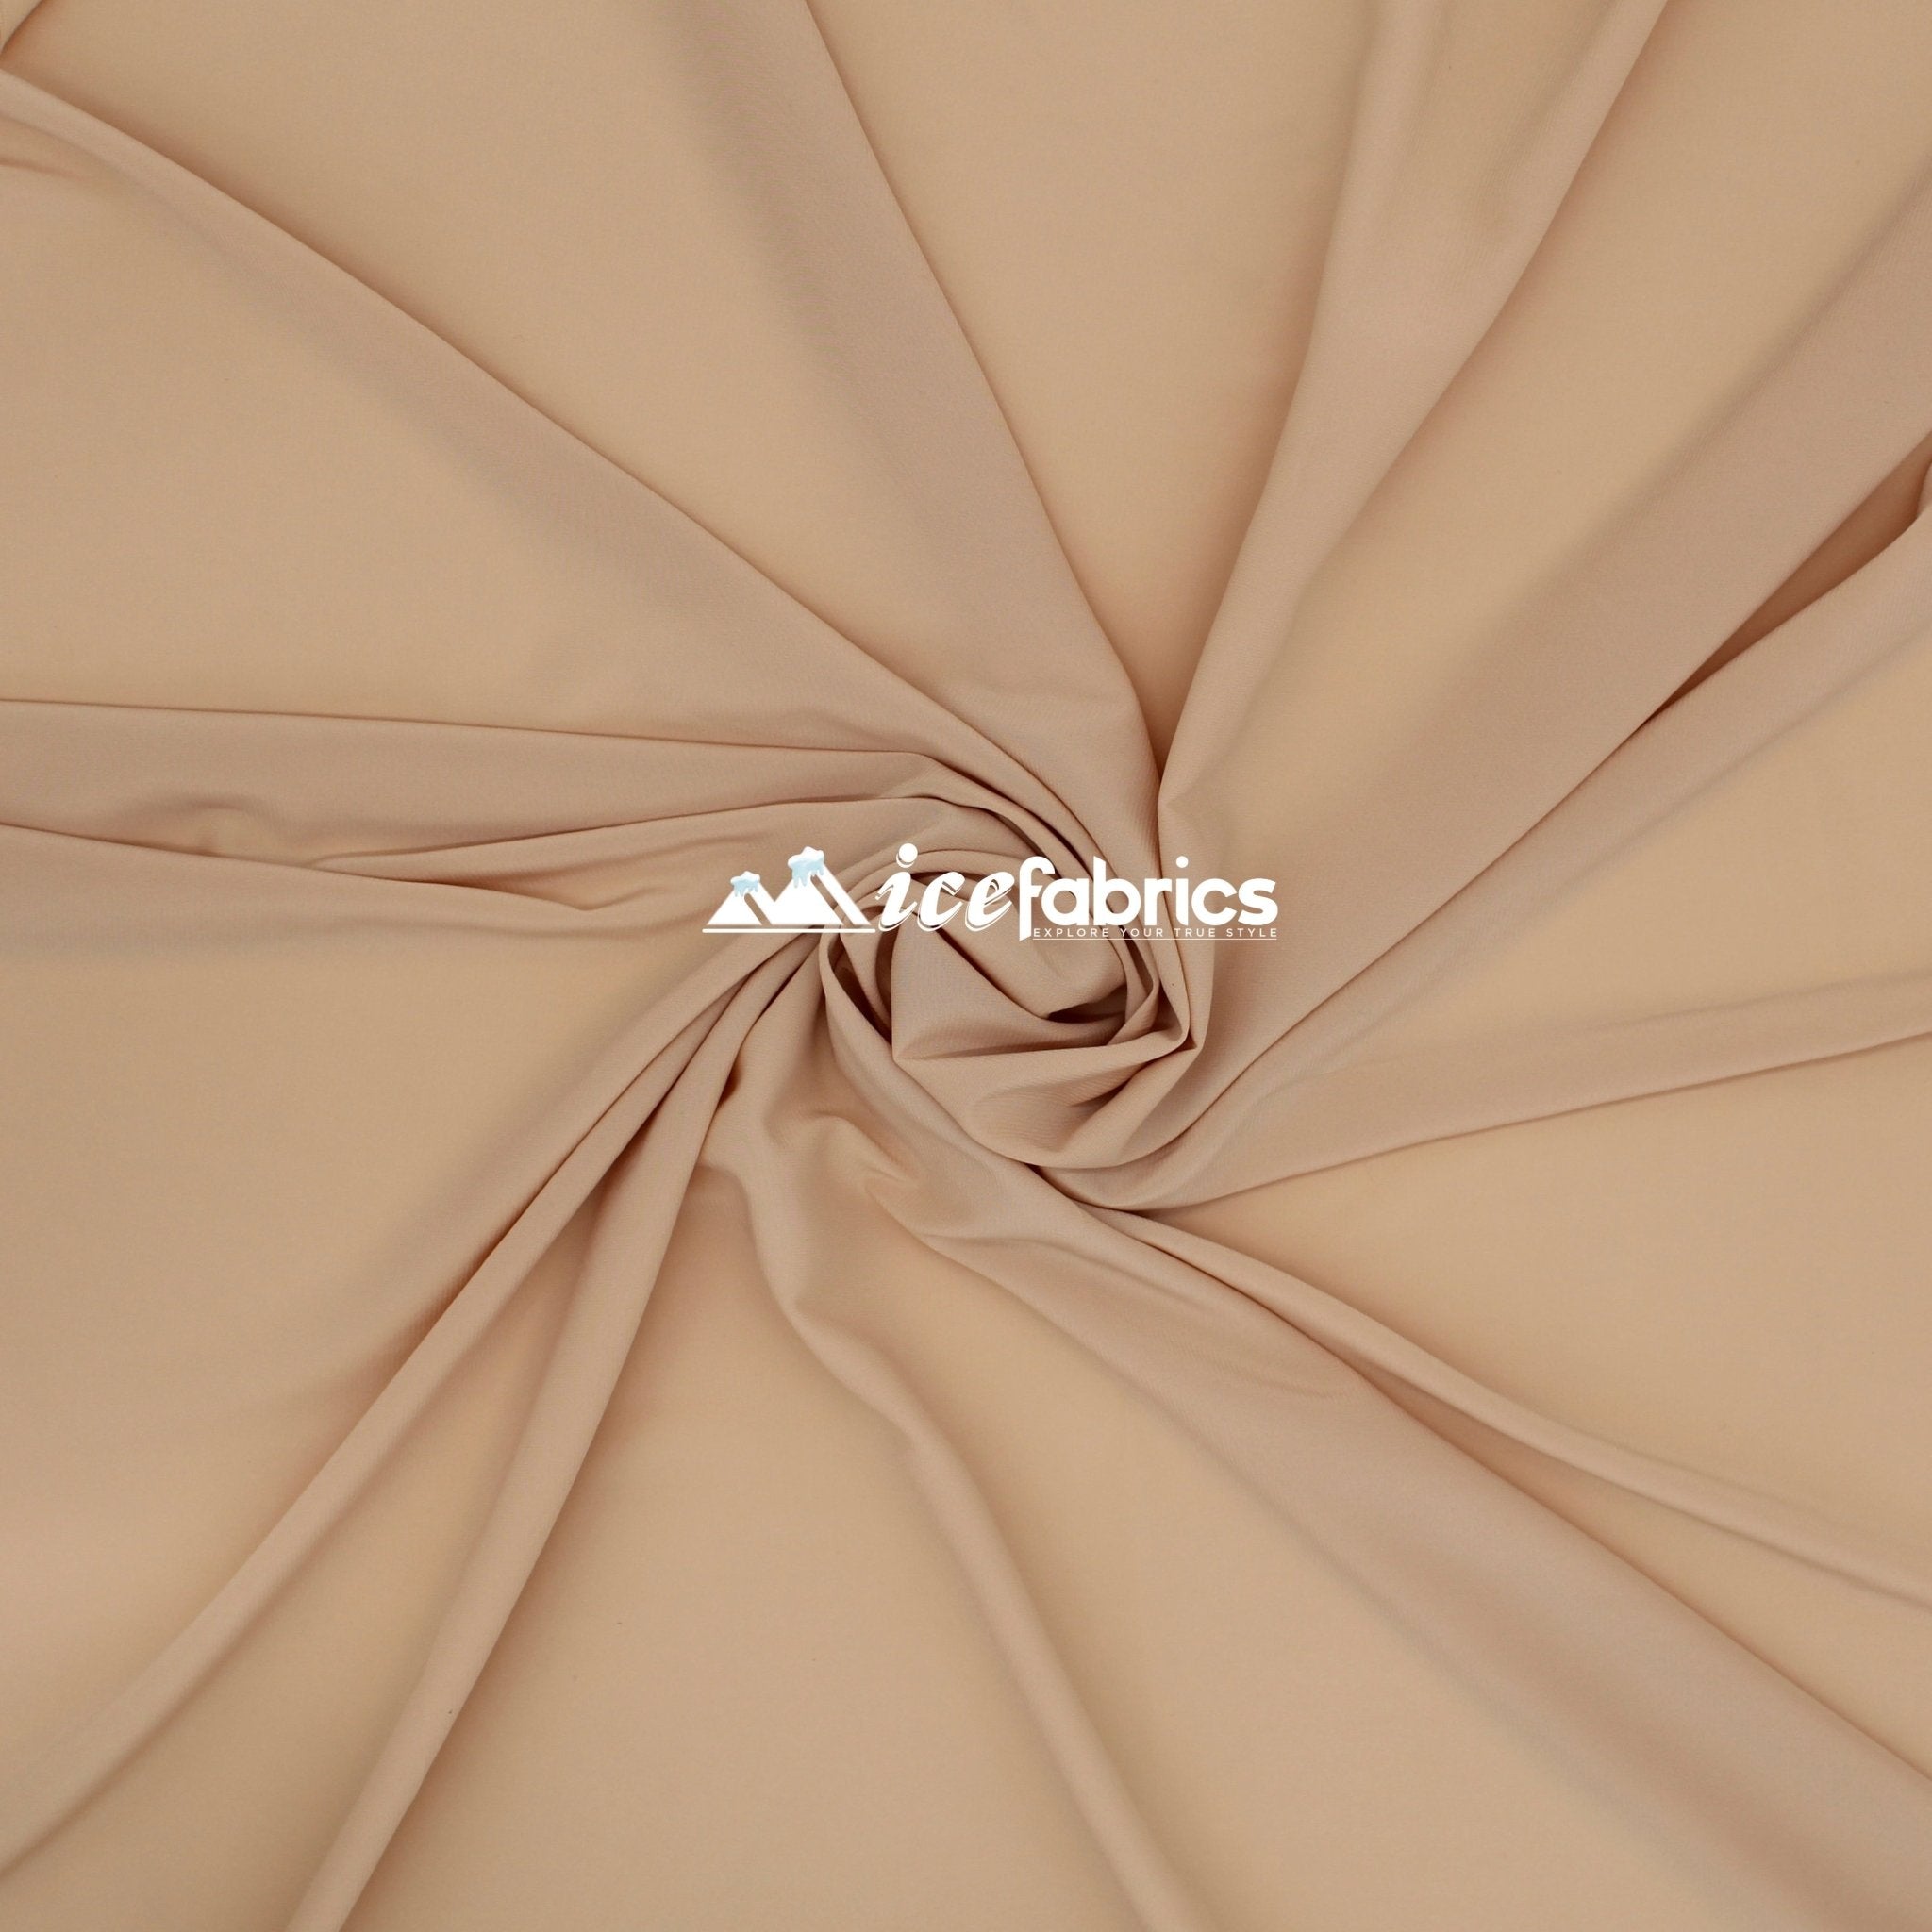 Silk Fabric Stretch Chiffon Fabric/ Spandex Fabric/ NudeChiffon FabricICE FABRICSICE FABRICSNudePer YardSilk Fabric Stretch Chiffon Fabric/ Spandex Fabric/ Nude ICE FABRICS